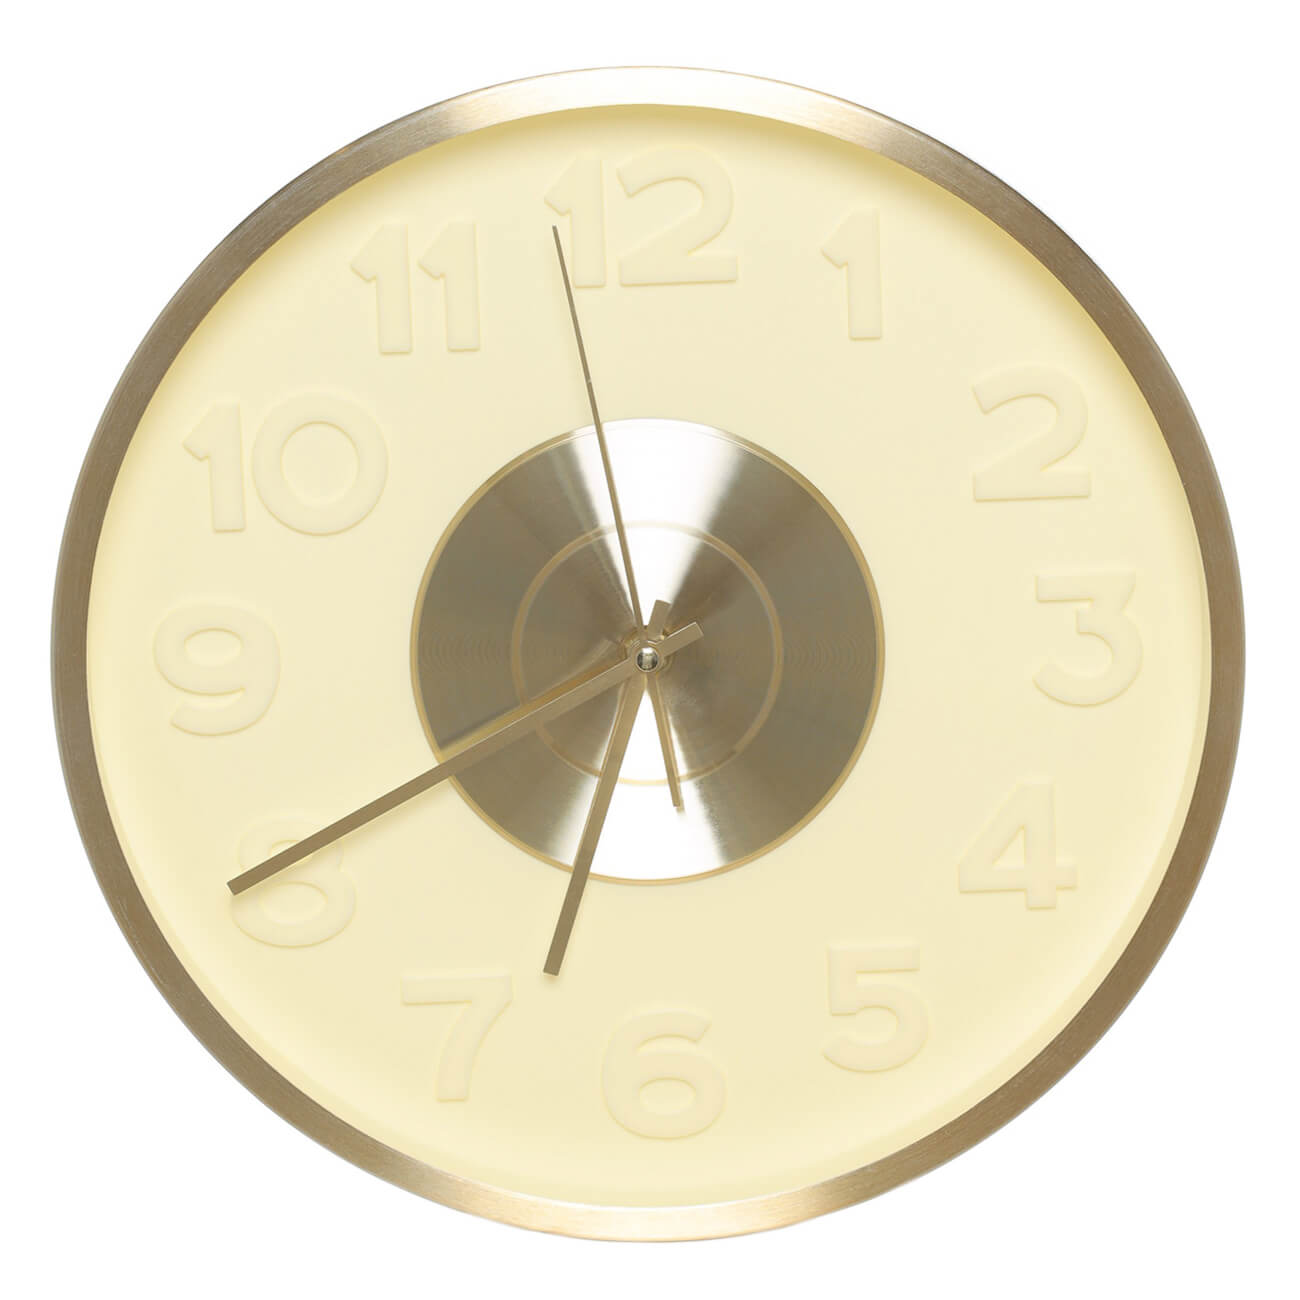 Часы настенные, 30 см, с подсветкой, пластик/стекло, круглые, золотистые, Fantastic gold